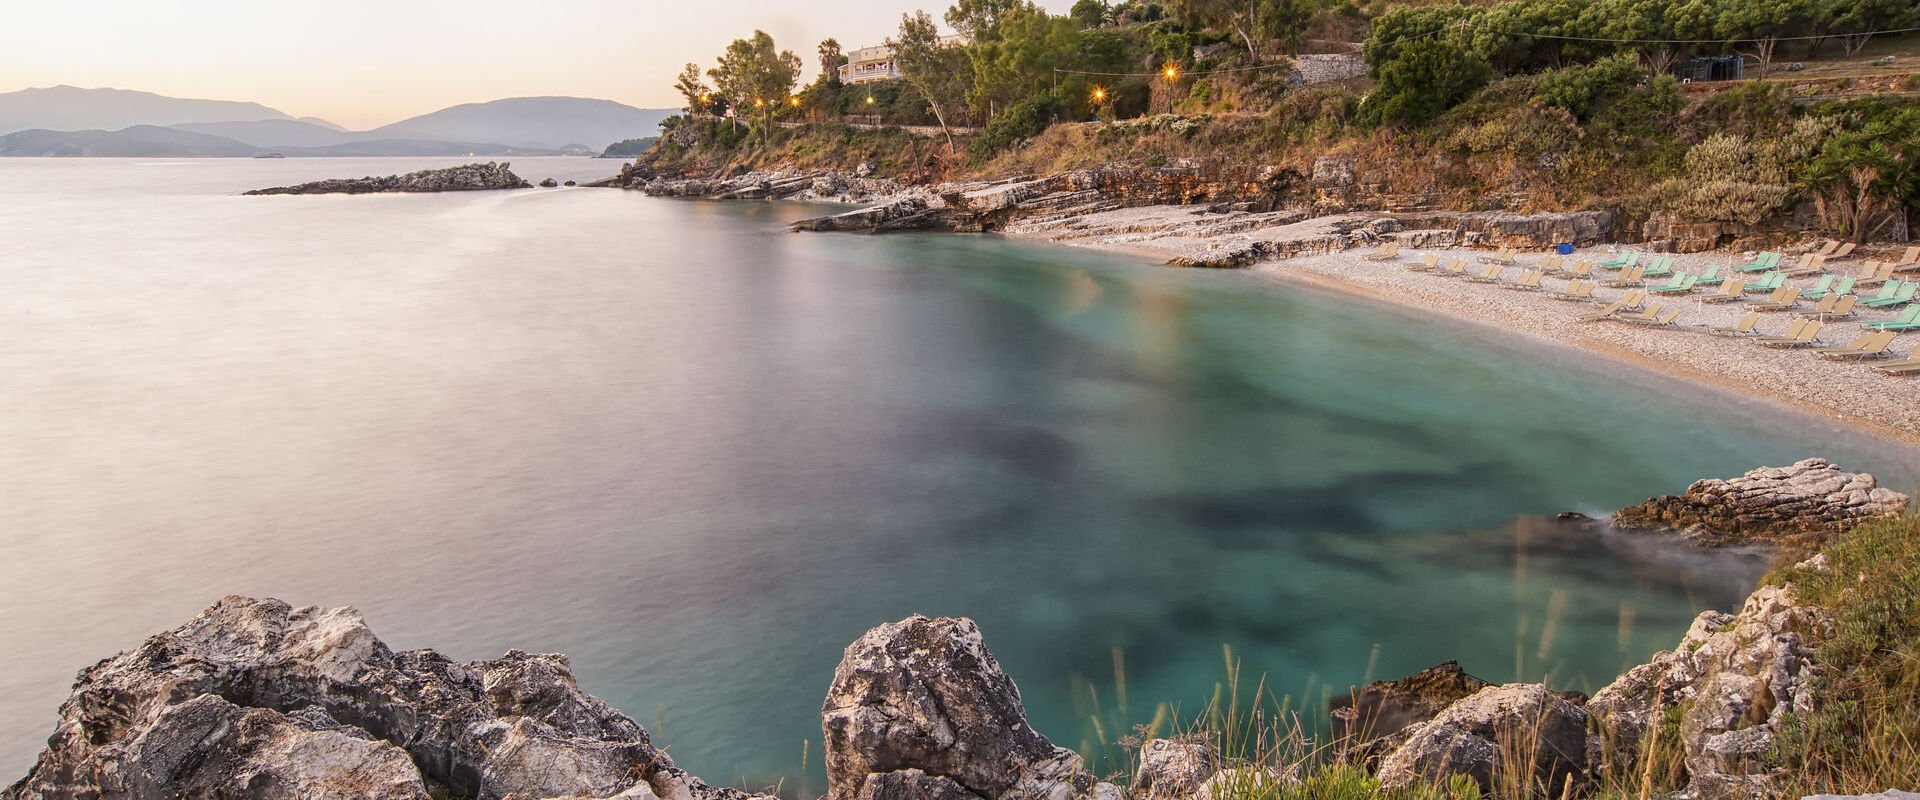 Beach at dawn, Corfu